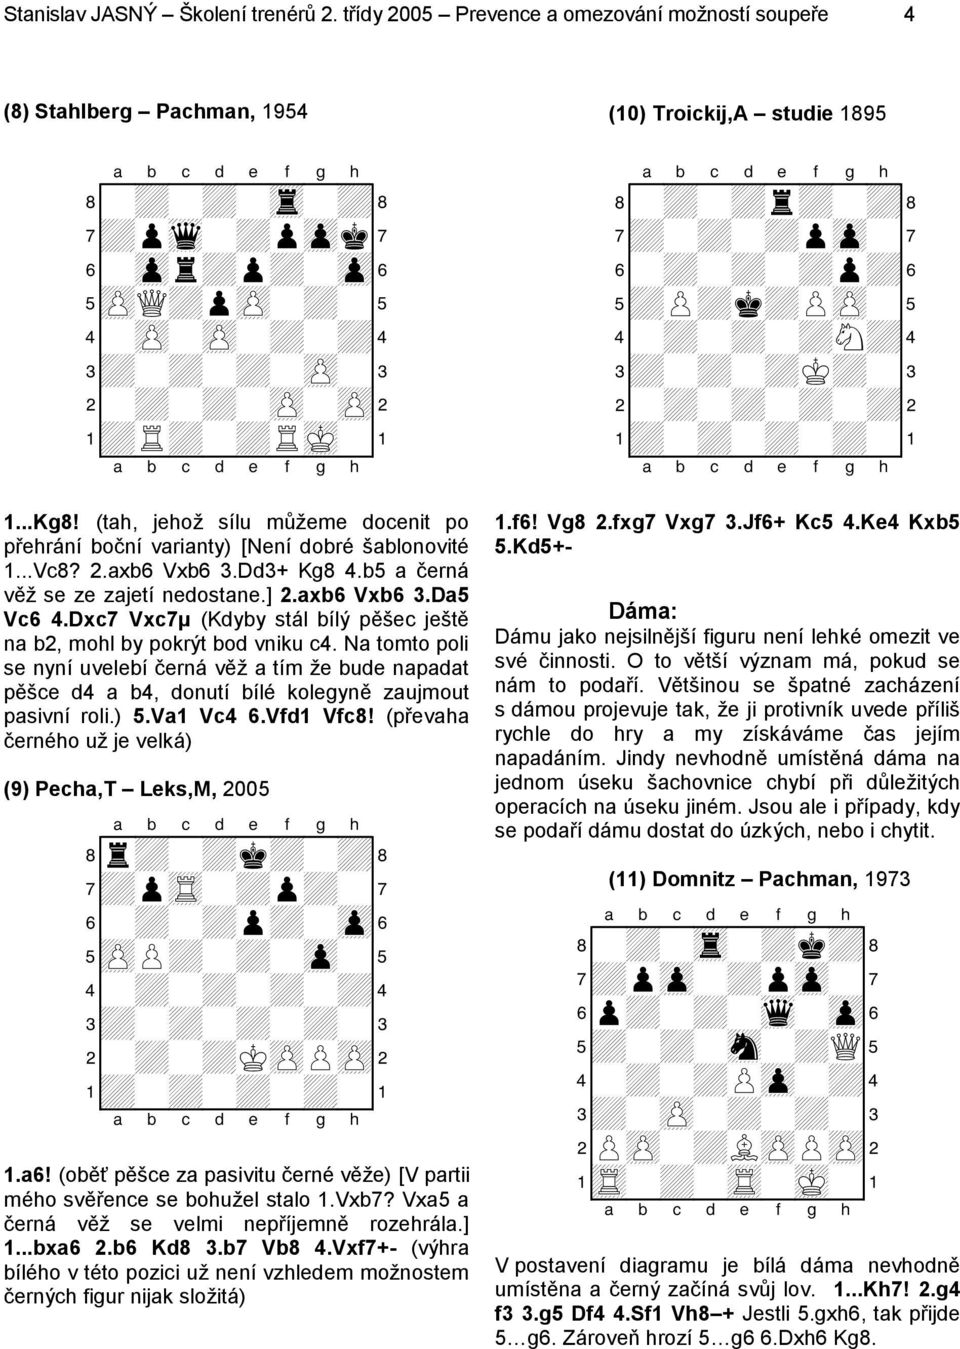 (tah, jehož sílu můžeme docenit po přehrání boční varianty) [Není dobré šablonovité 1...Vc8? 2.axb6 Vxb6 3.Dd3+ Kg8 4.b5 a černá věž se ze zajetí nedostane.] 2.axb6 Vxb6 3.Da5 Vc6 4.